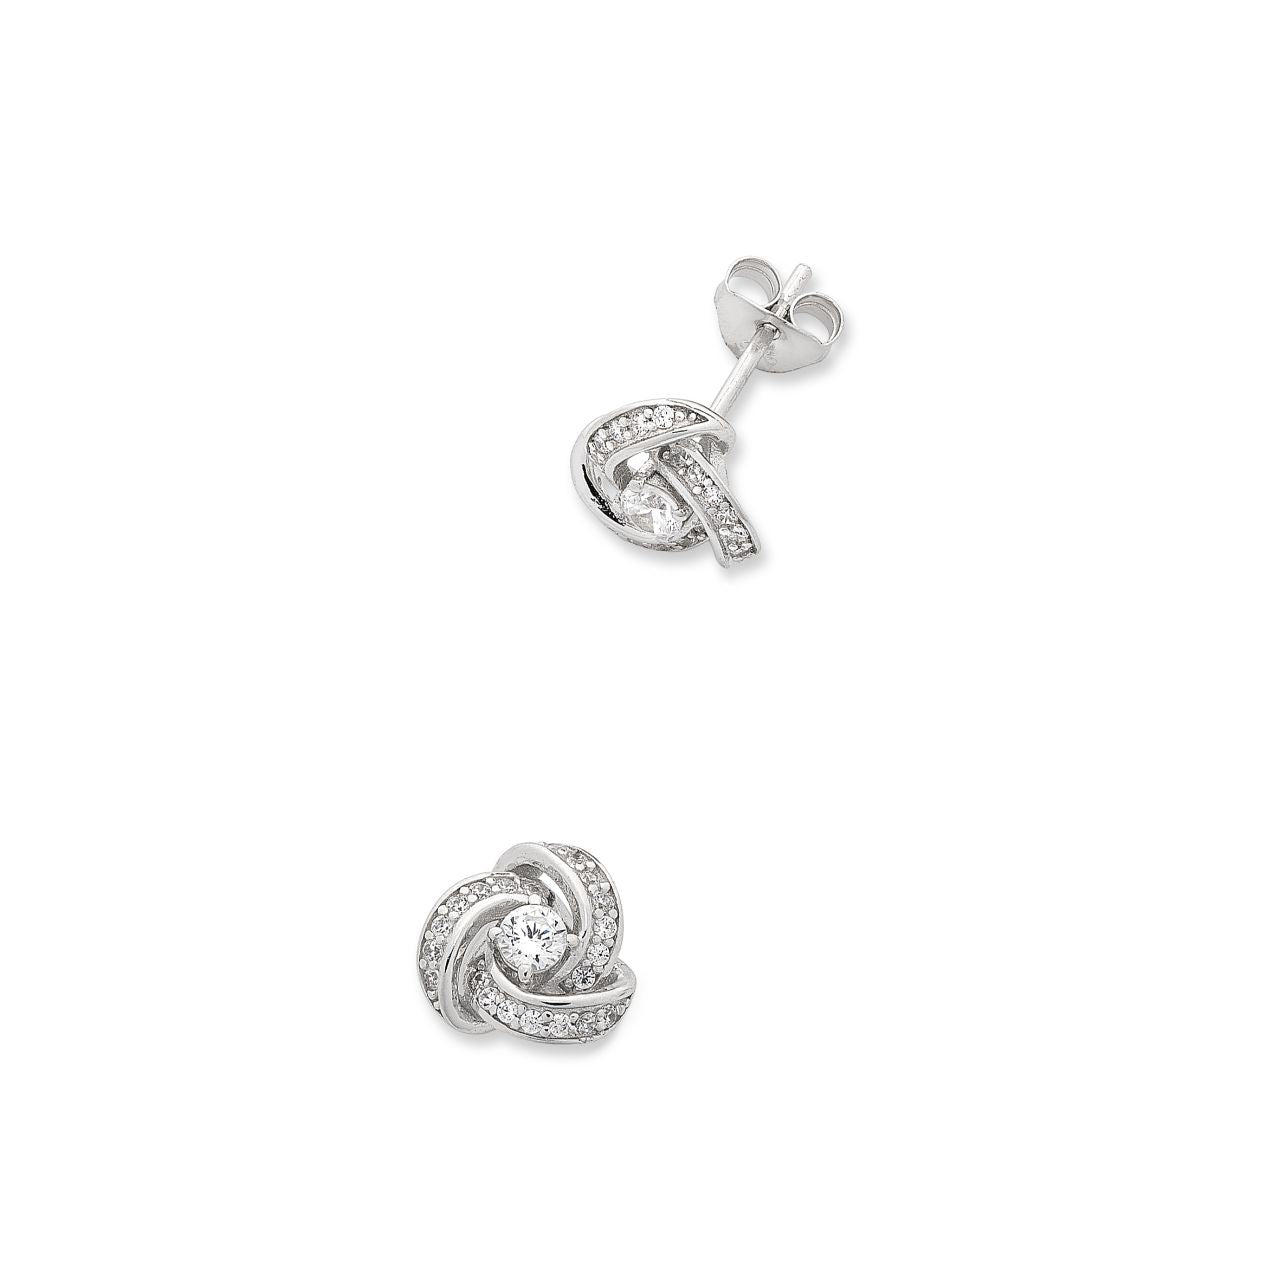 Sterling Silver Knot Stud Earrings